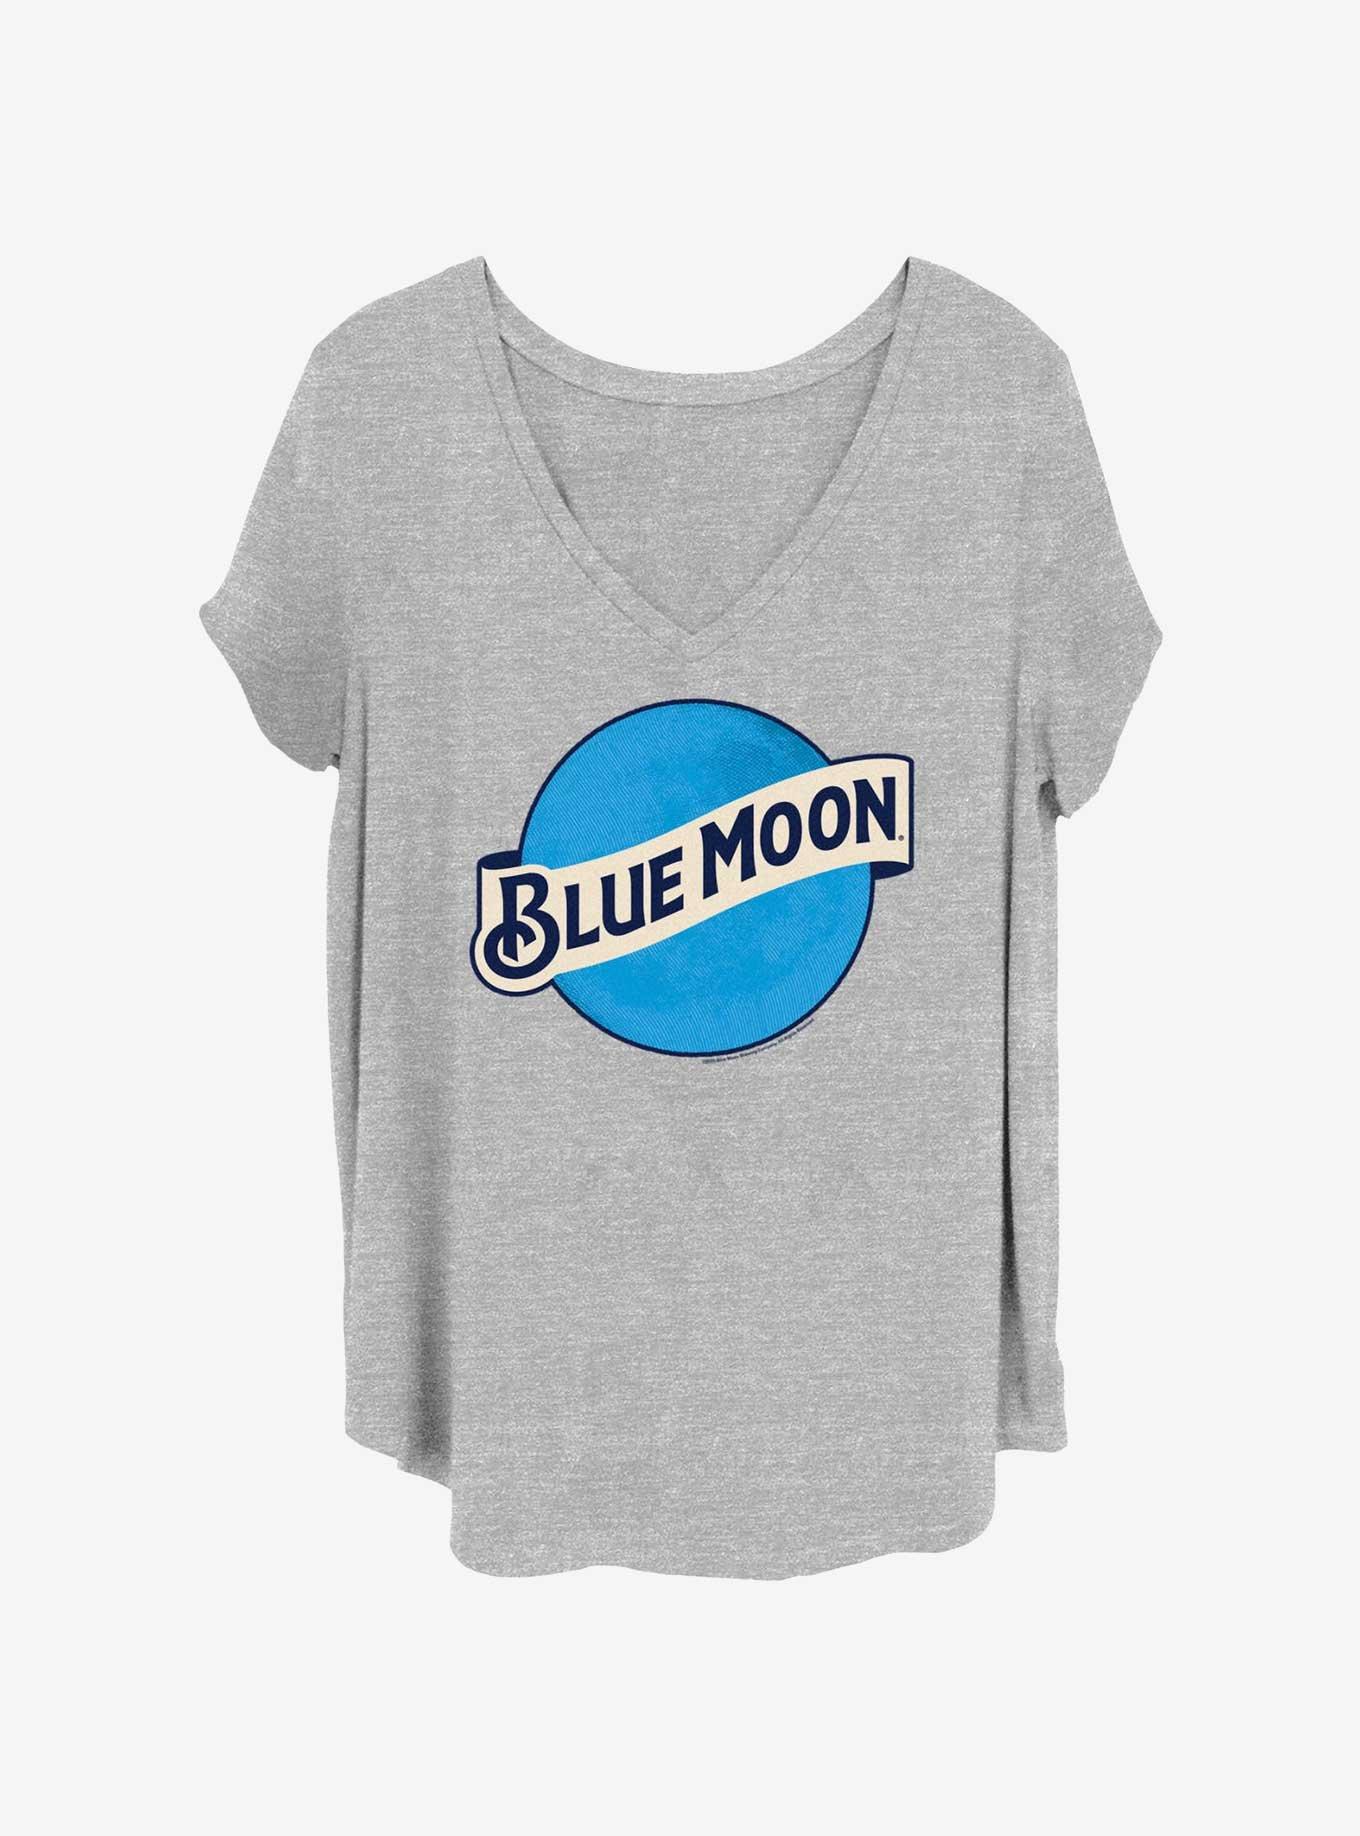 Coors Blue Moon Logo Girls T-Shirt Plus